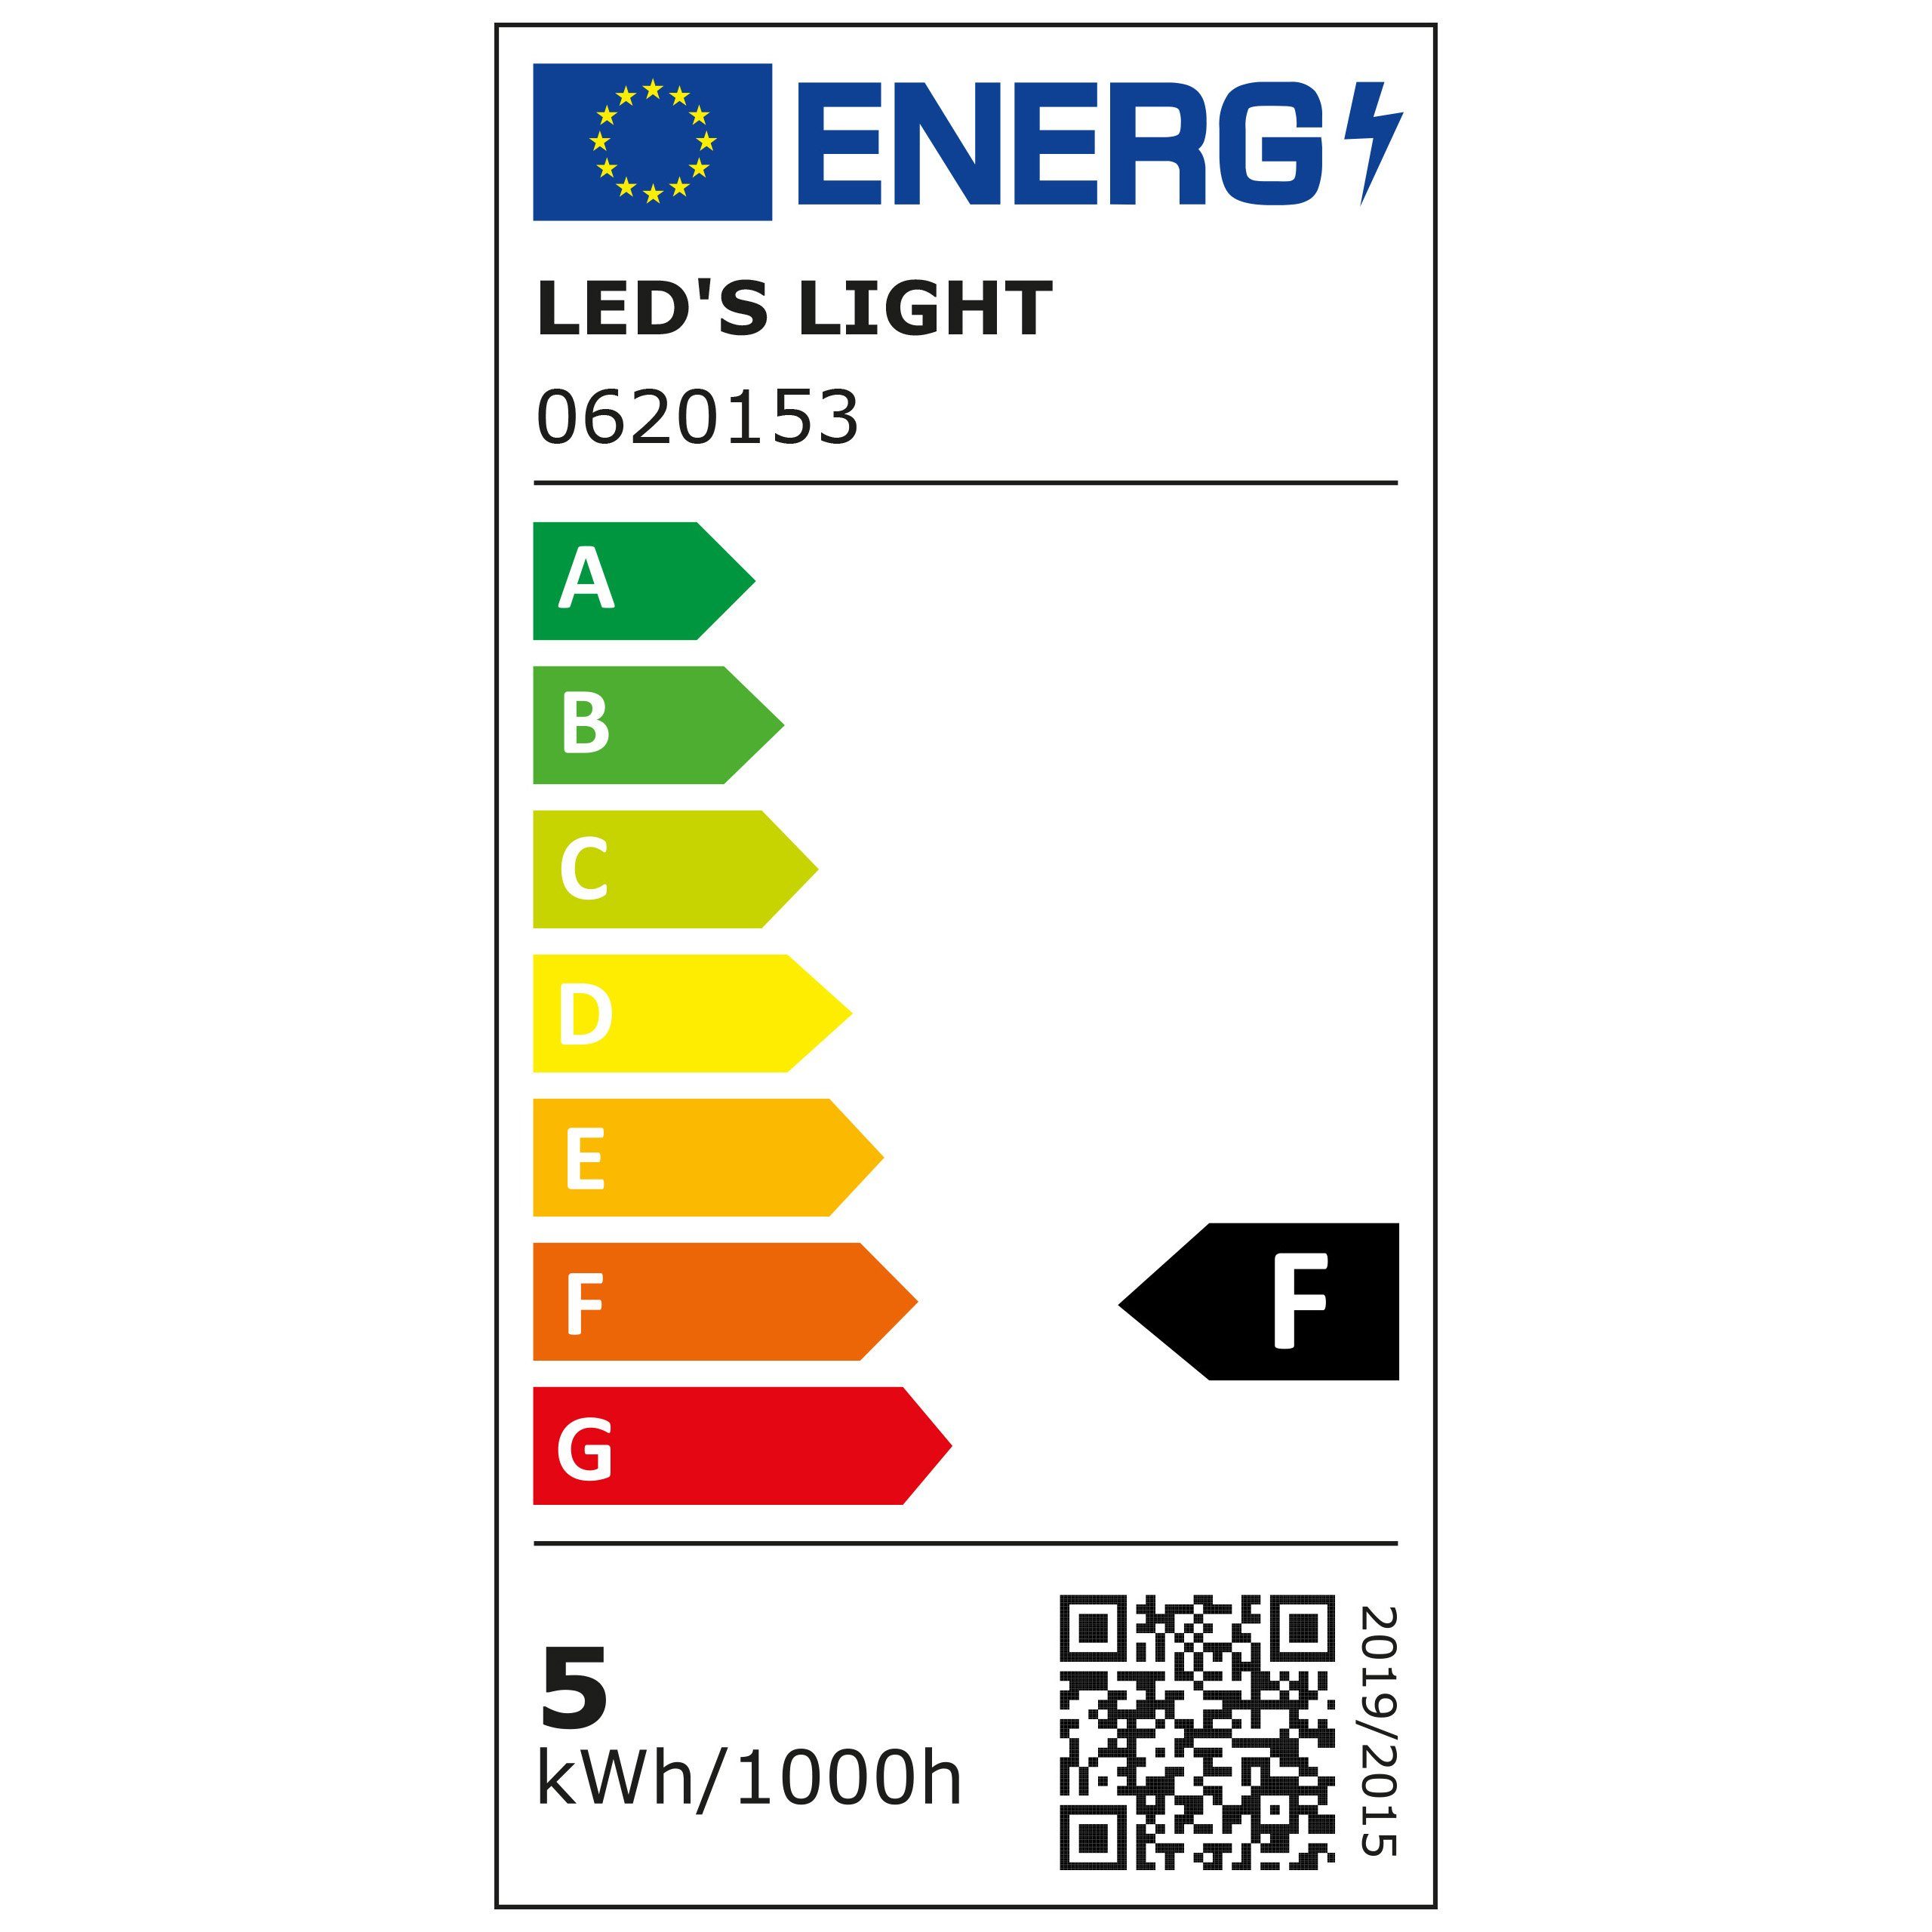 E14, LED warmweiß LED-Leuchtmittel LED's light C35 Kerze, 0620153 4.5W E14 Frosted